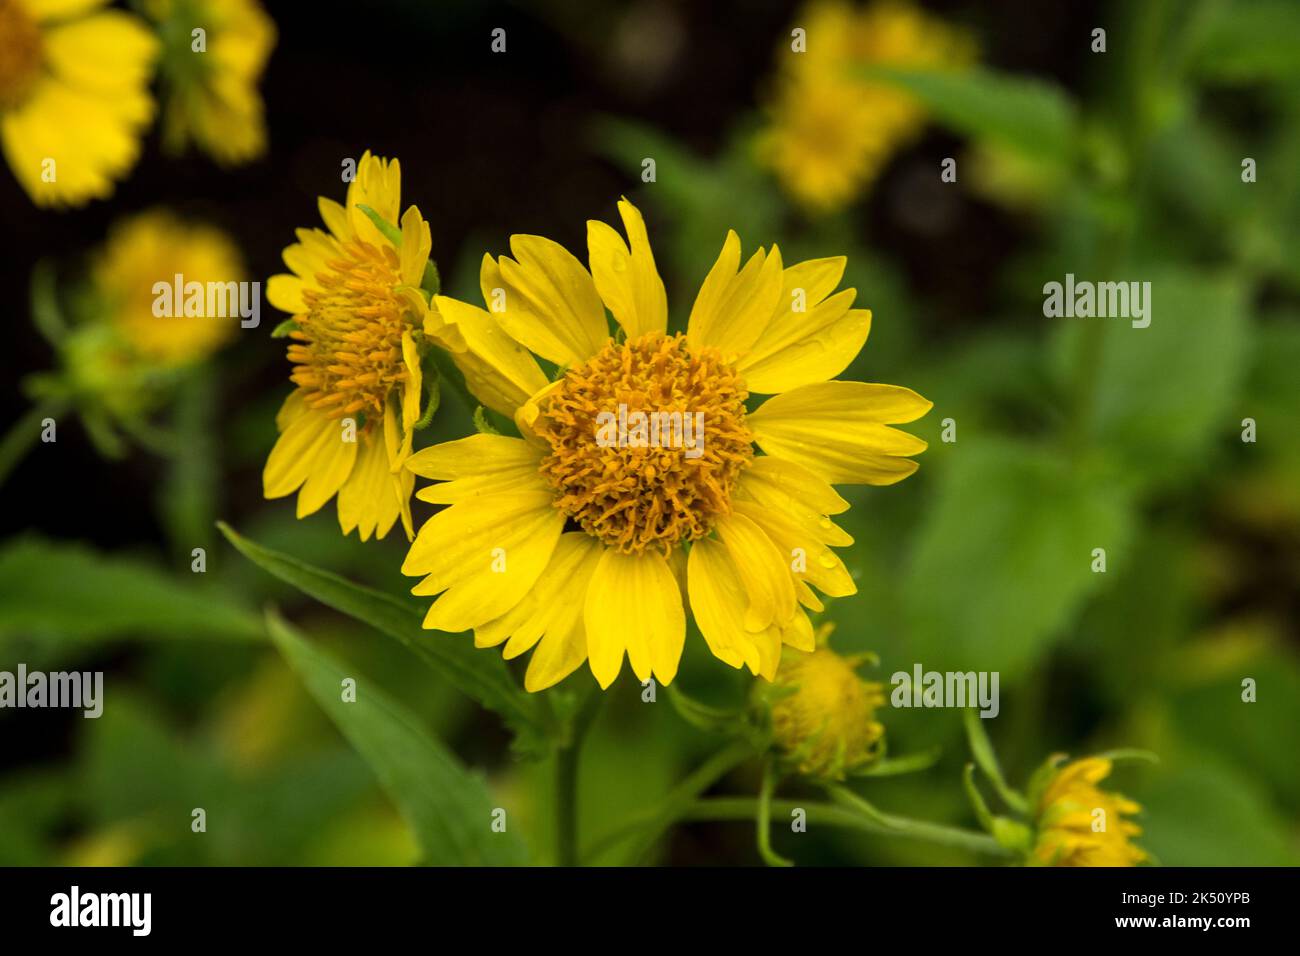 The yellow flower Verbesina encelioides Stock Photo